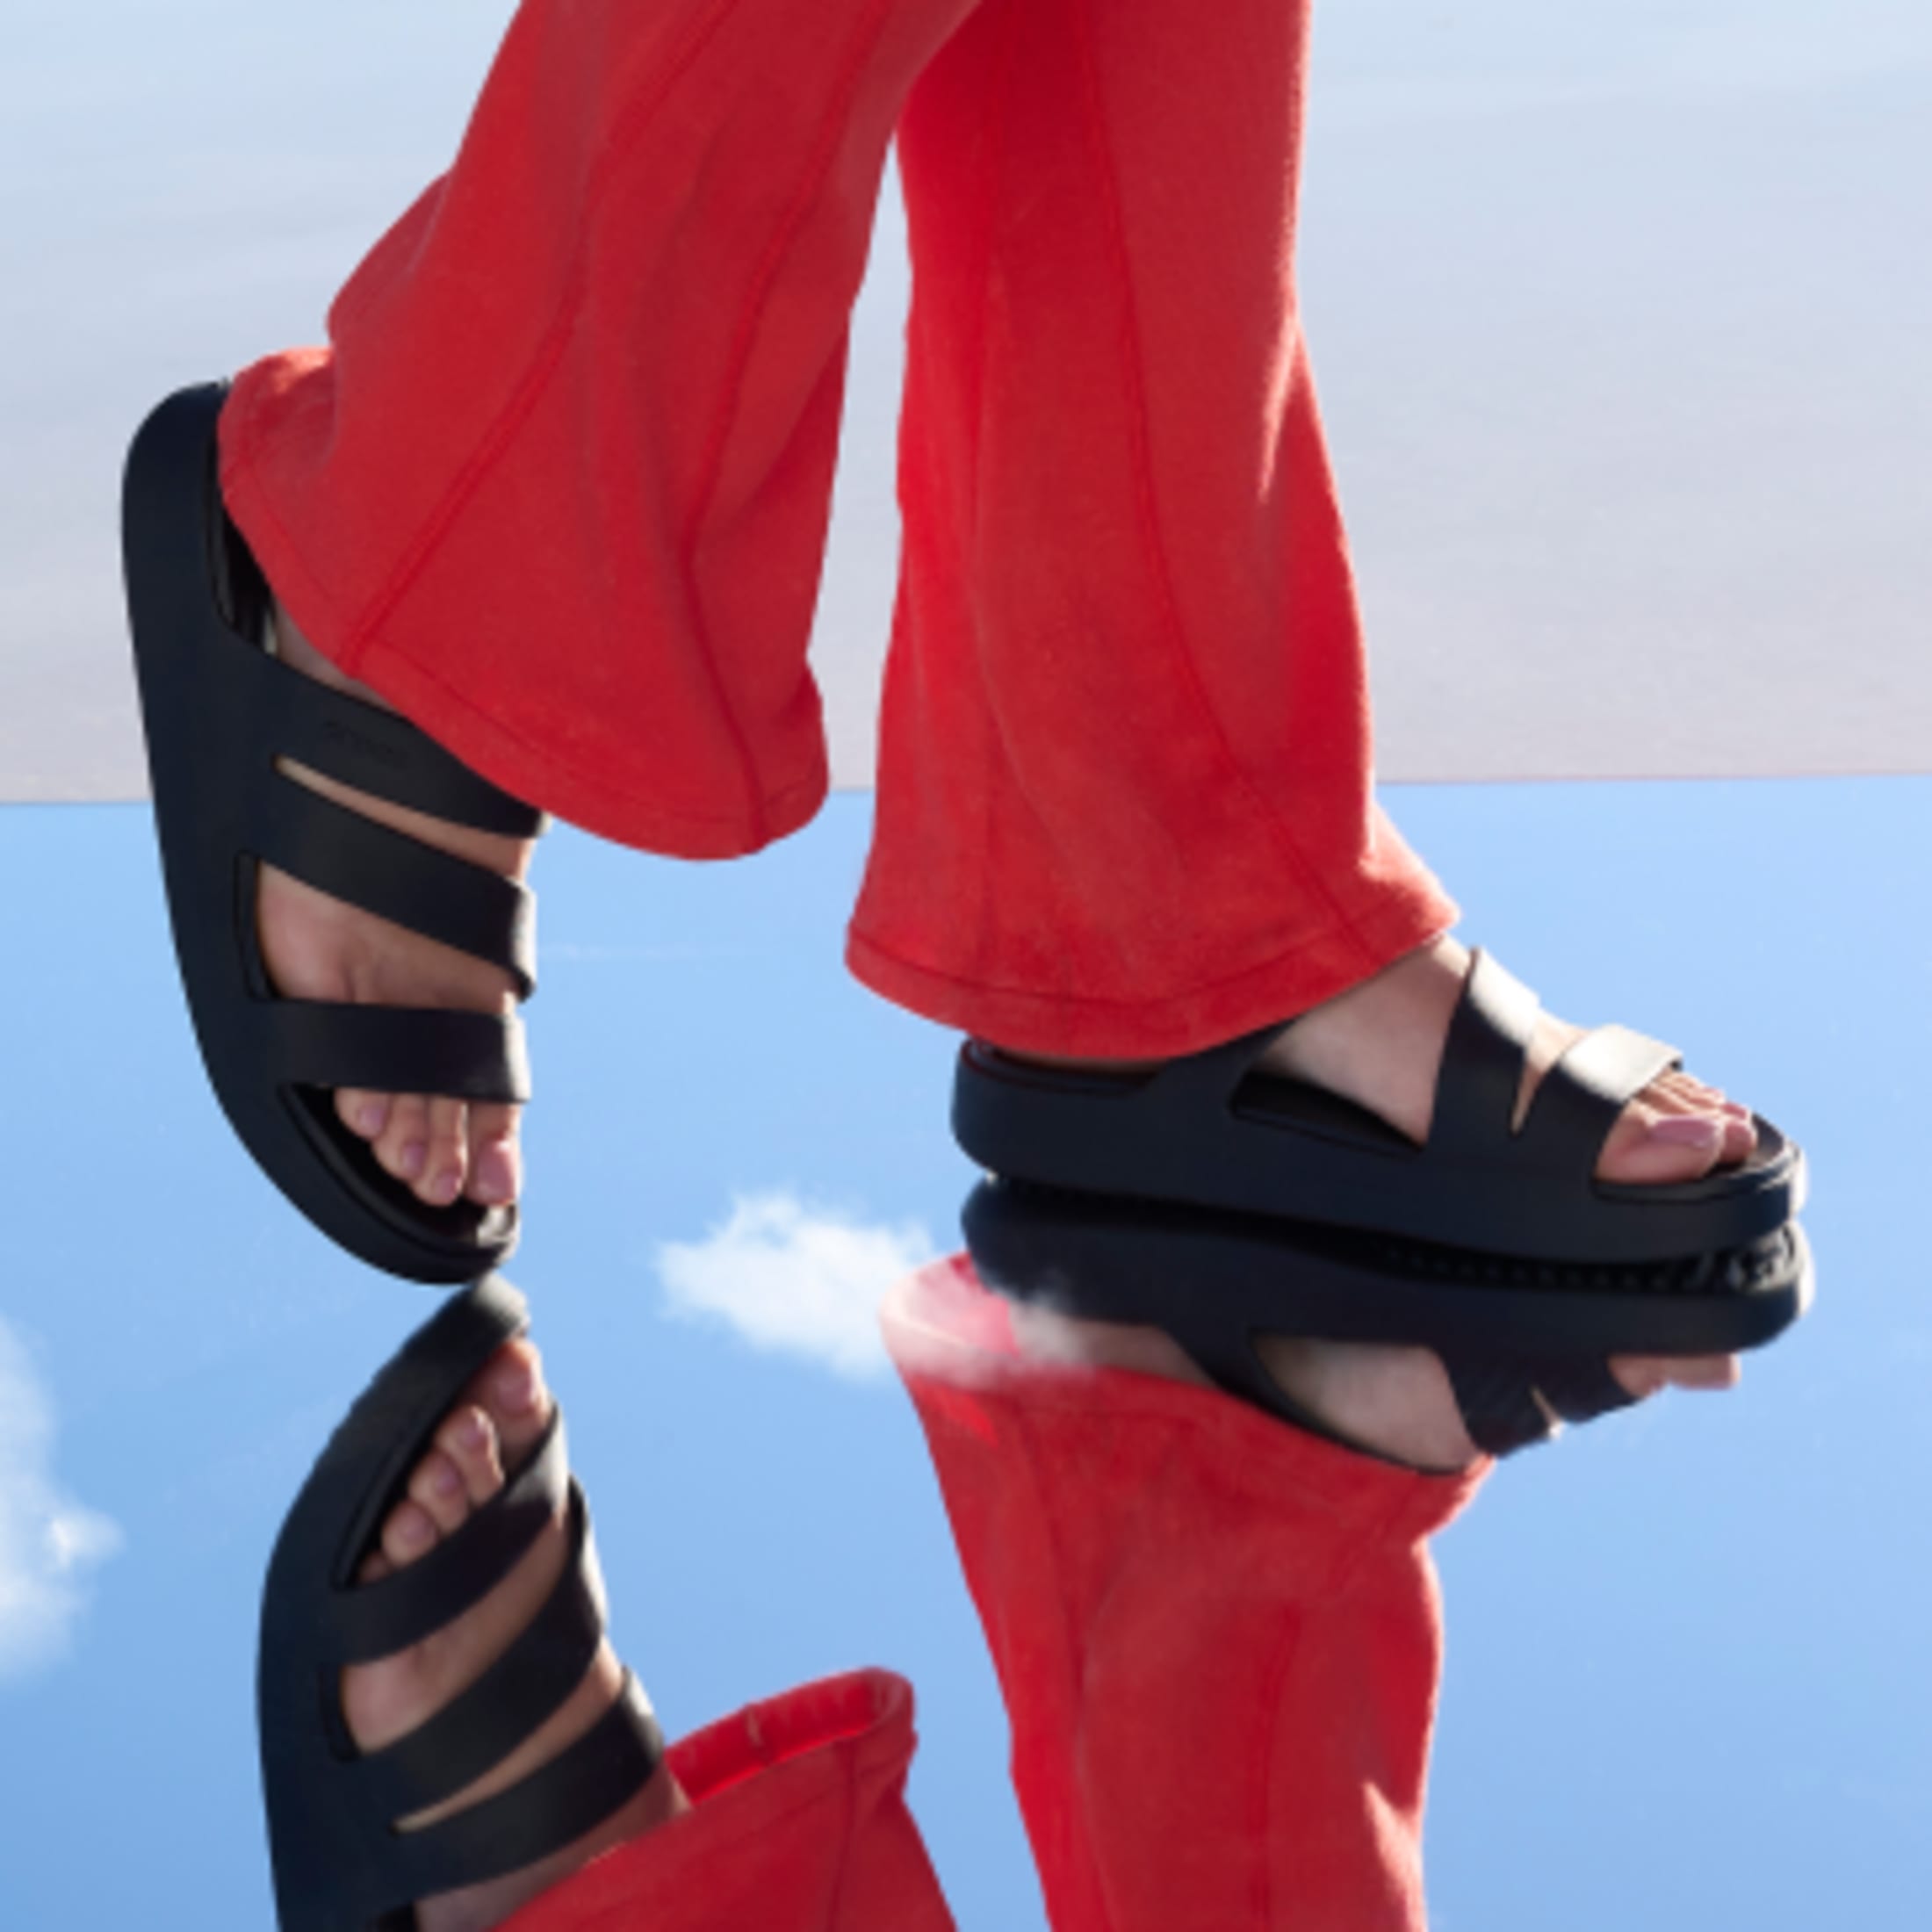 Buy Red Croc Kitten Heel Slider Sandals Online